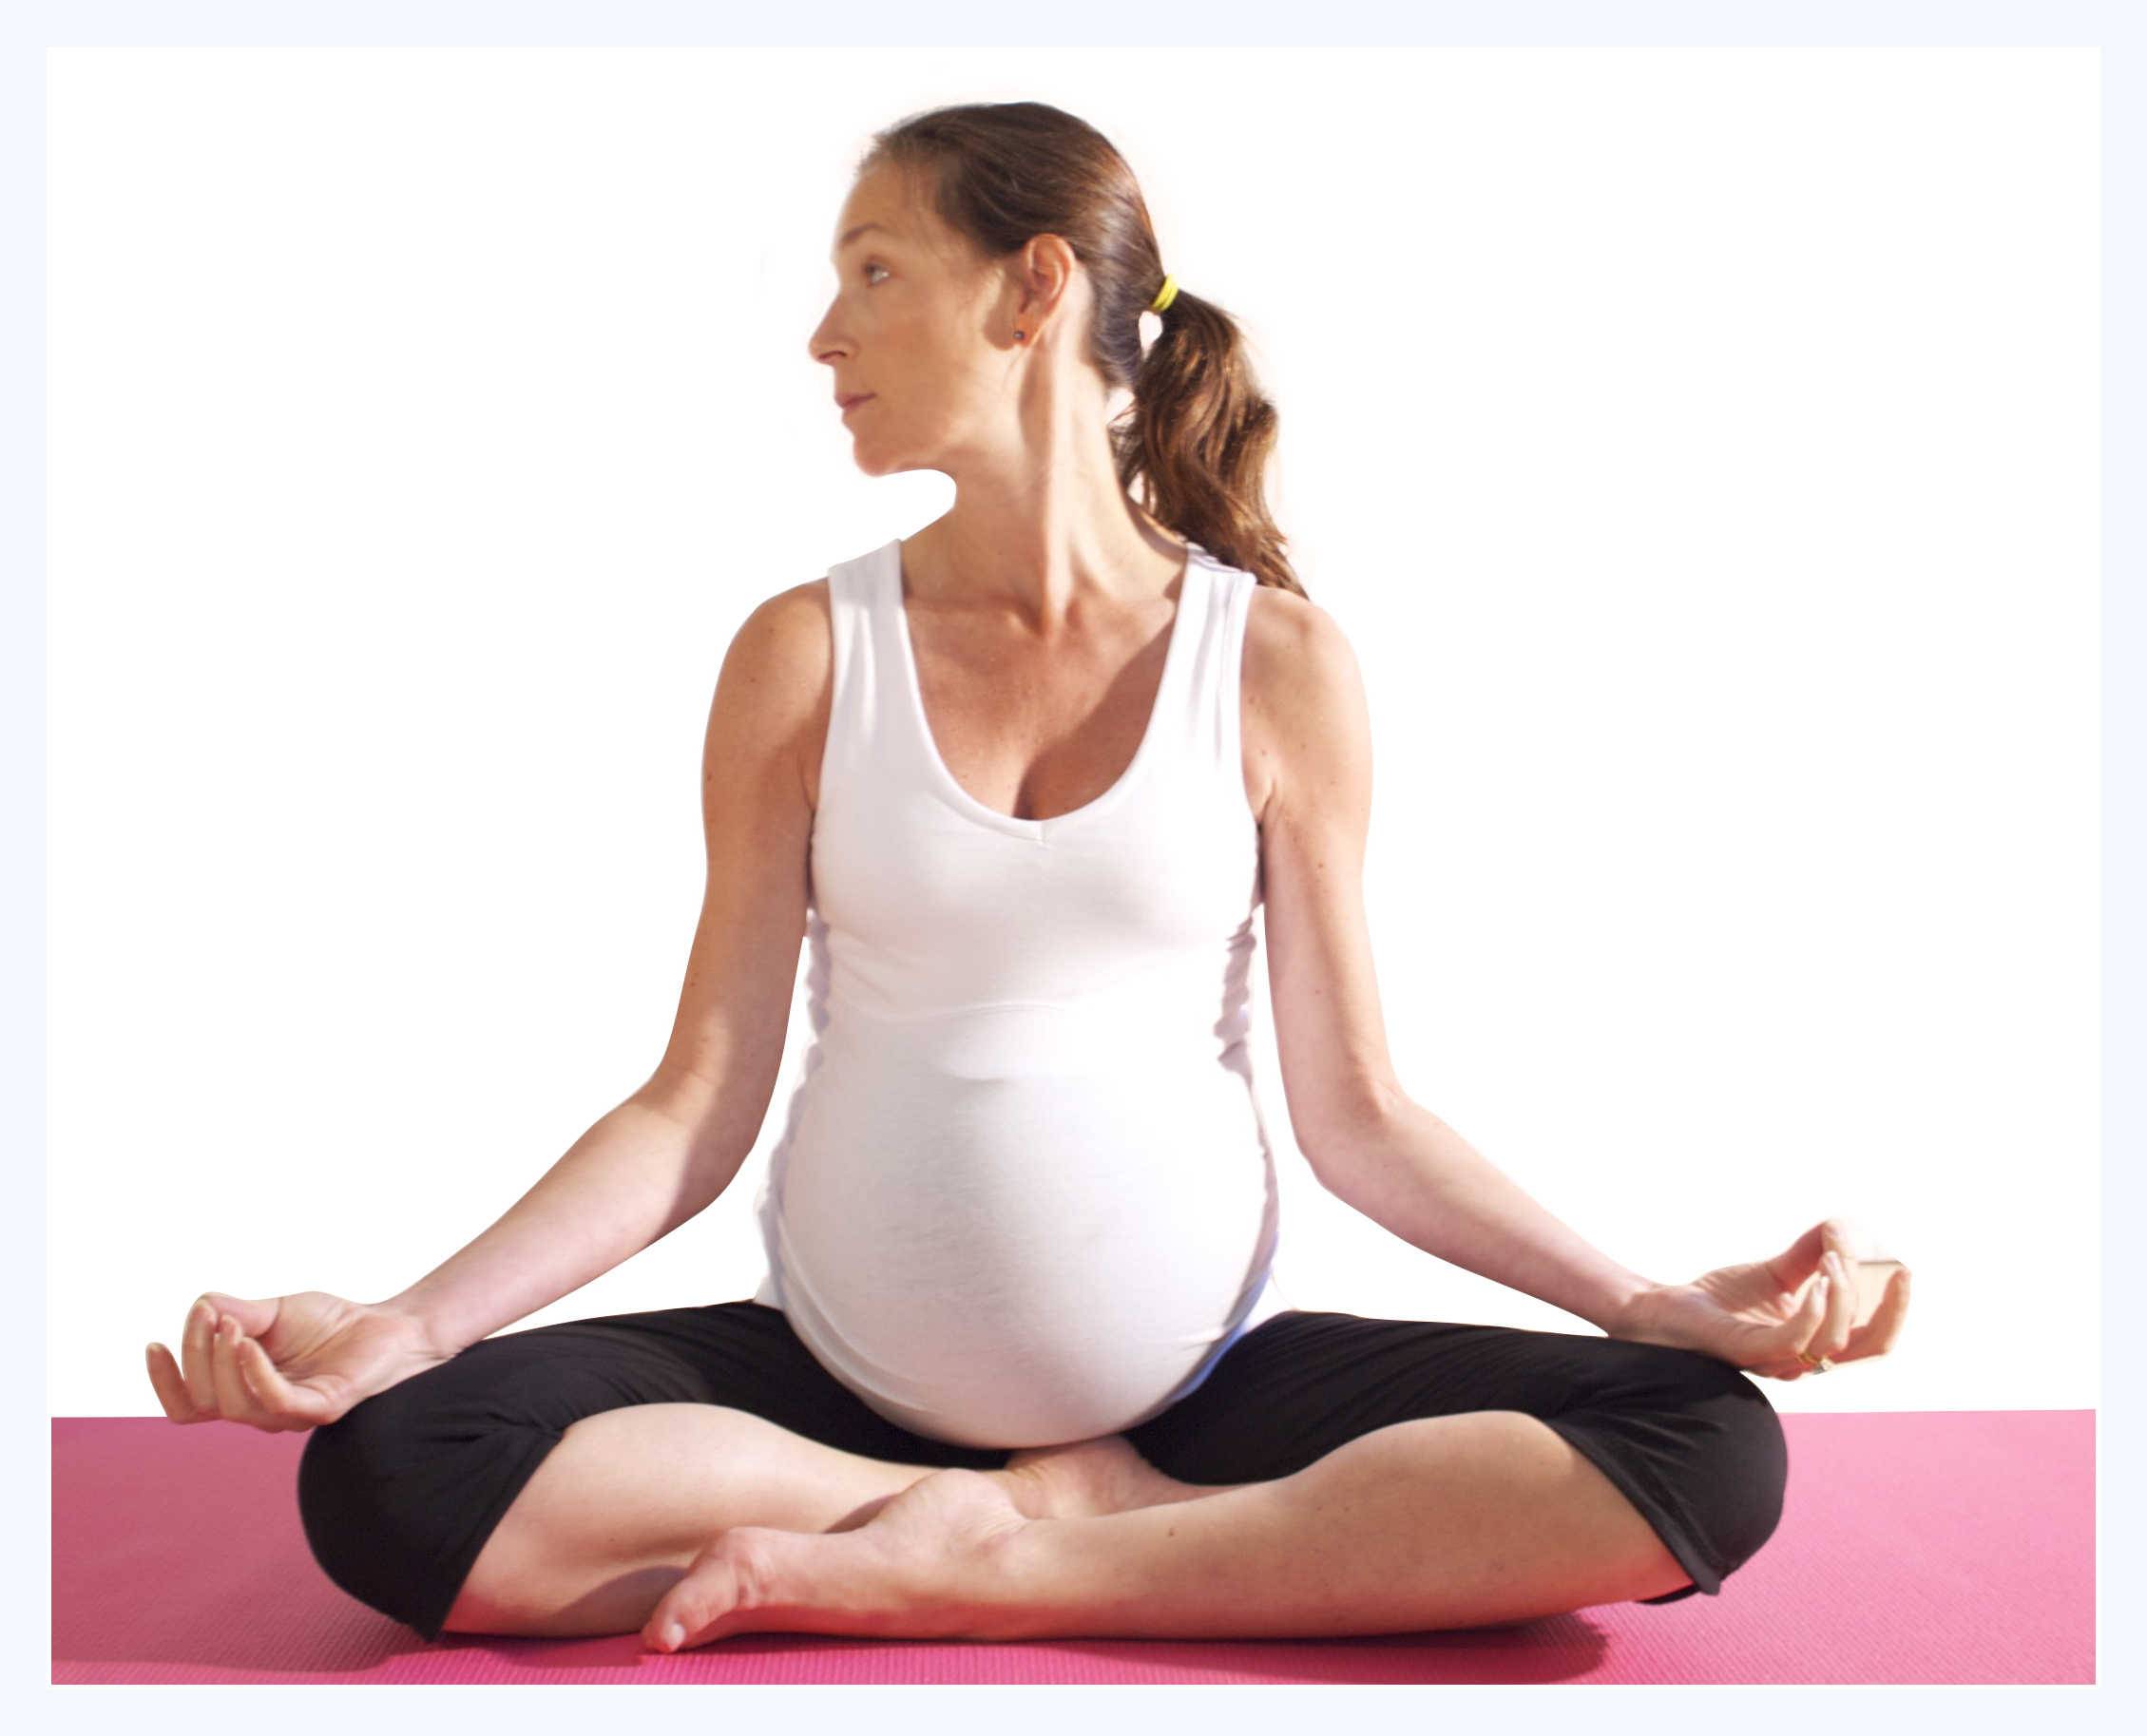 Йога для беременных: 1, 2, 3 триместр, видео, в домашних условиях, отзывы, польза и вред, противопоказания